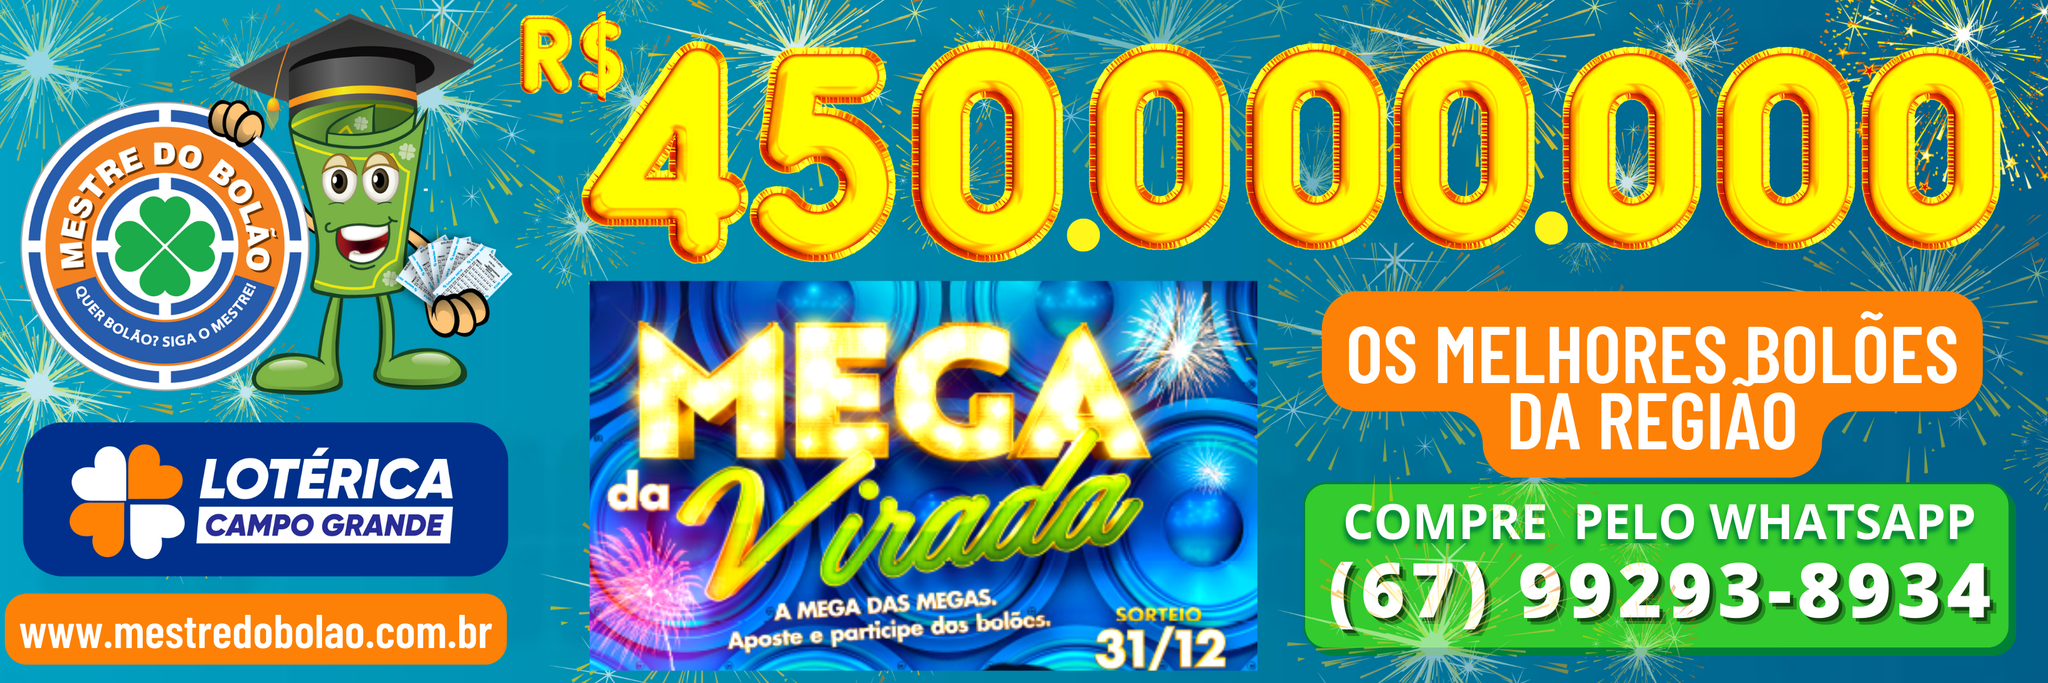 Prepare-se, está chegando a Mega da Virada com prêmio de R$ 450 Milhões -  Lotérica Campo Grande - Campo Grande News